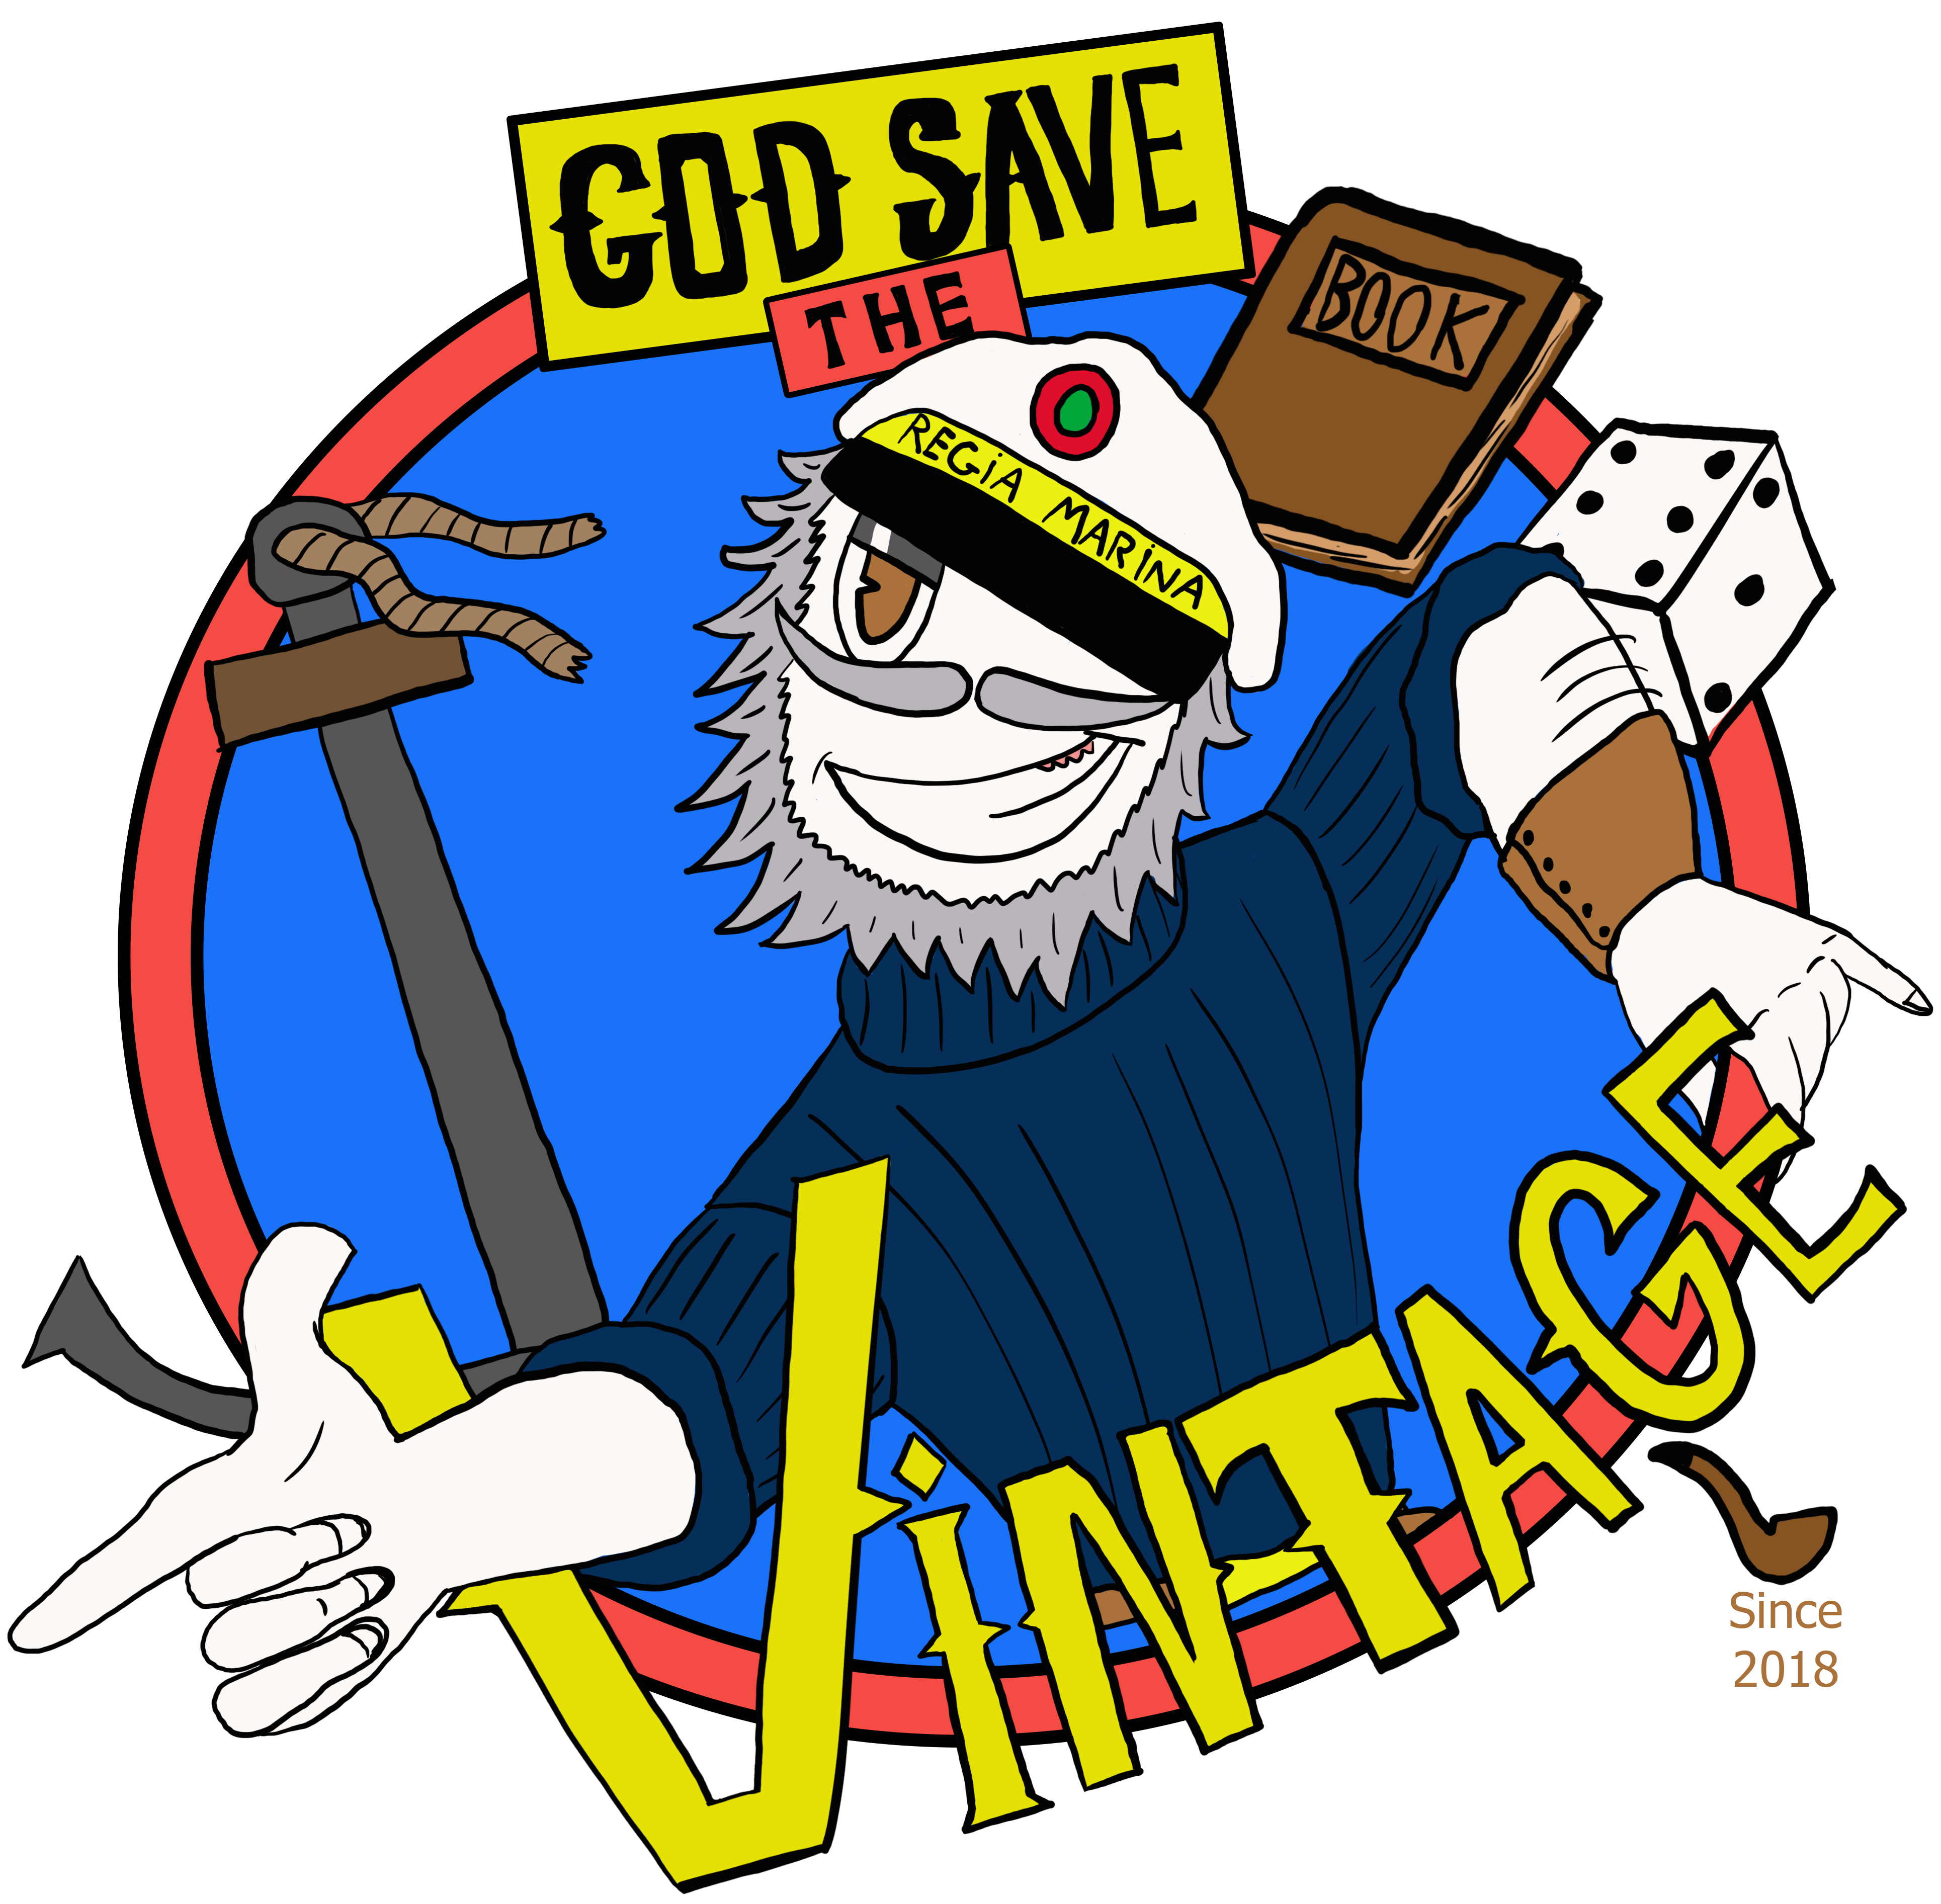 God Save the Vintage